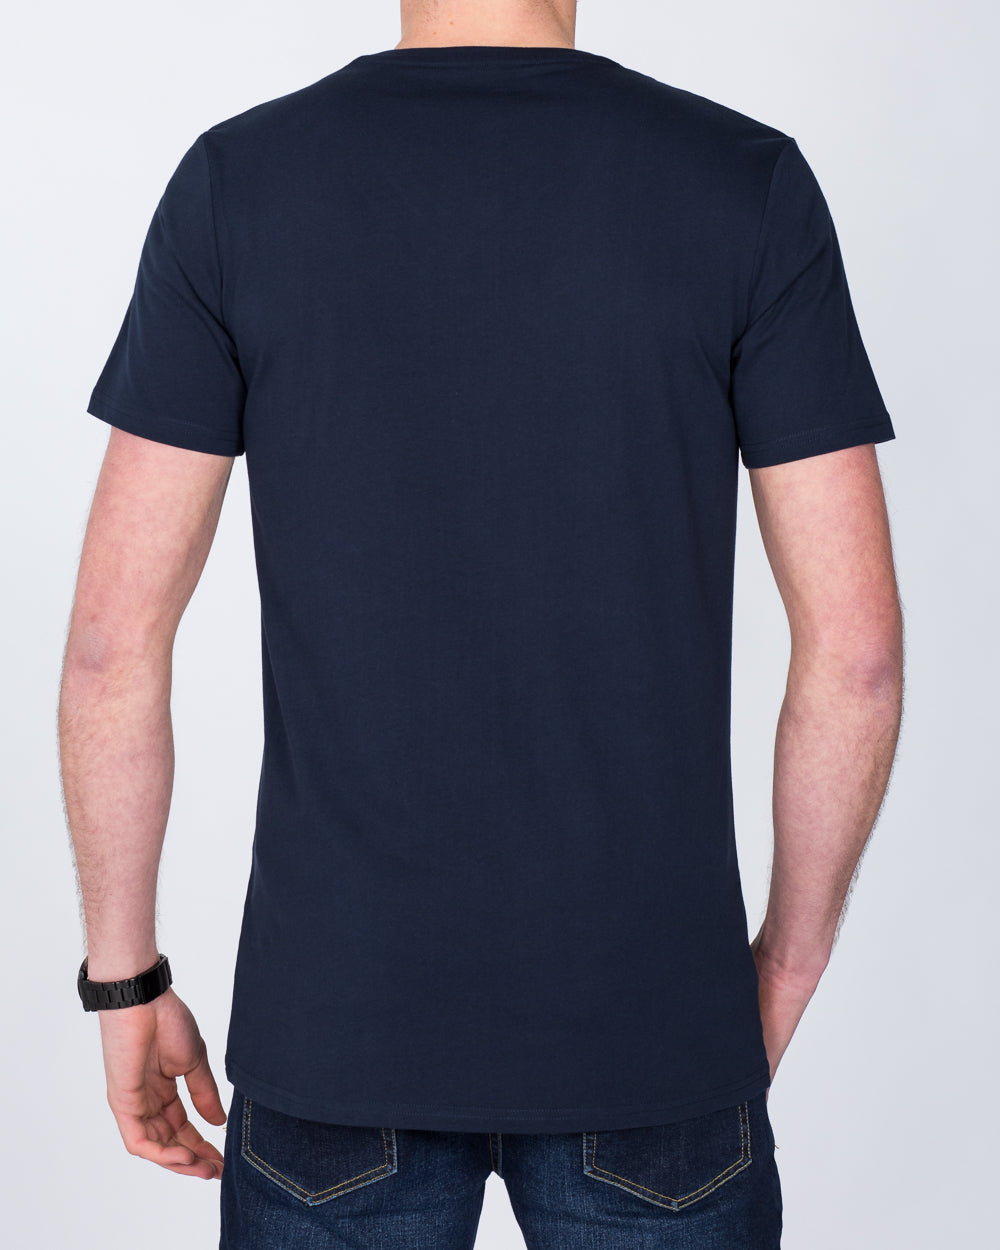 Girav Sydney Extra Tall T-Shirt (navy)